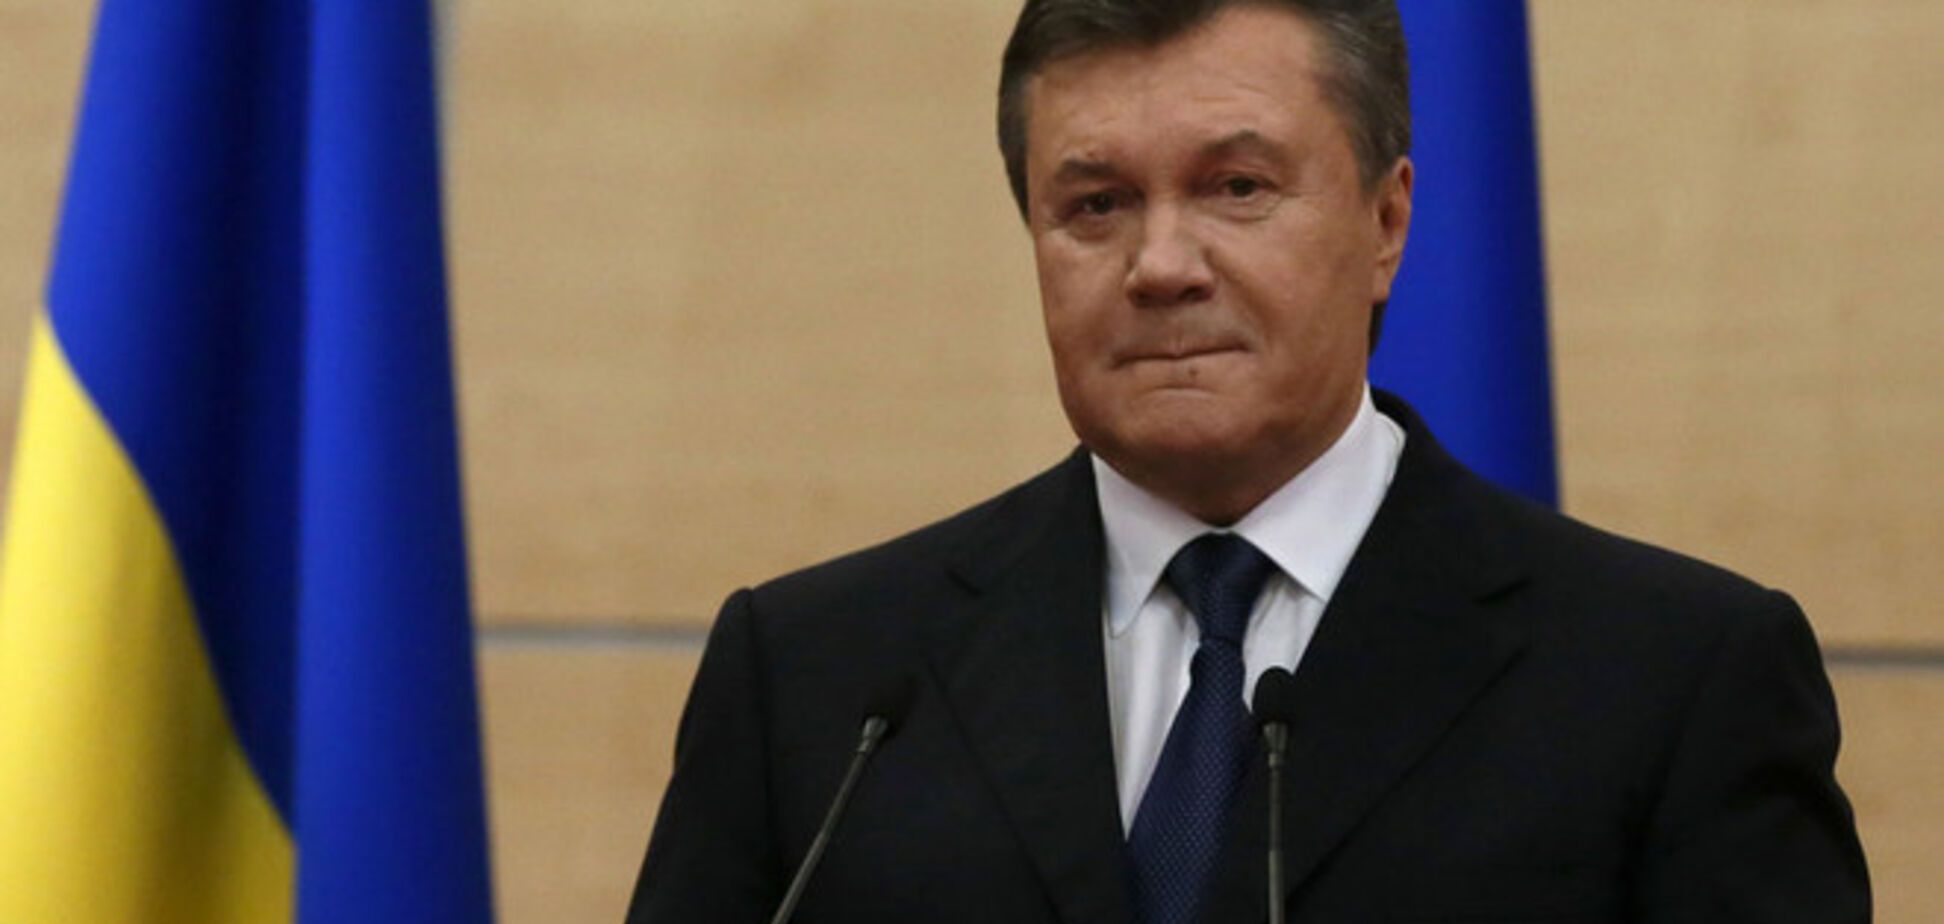 Кремль виставив українським чиновникам рахунок за перебування в РФ. Янукович вже сплатив - джерело